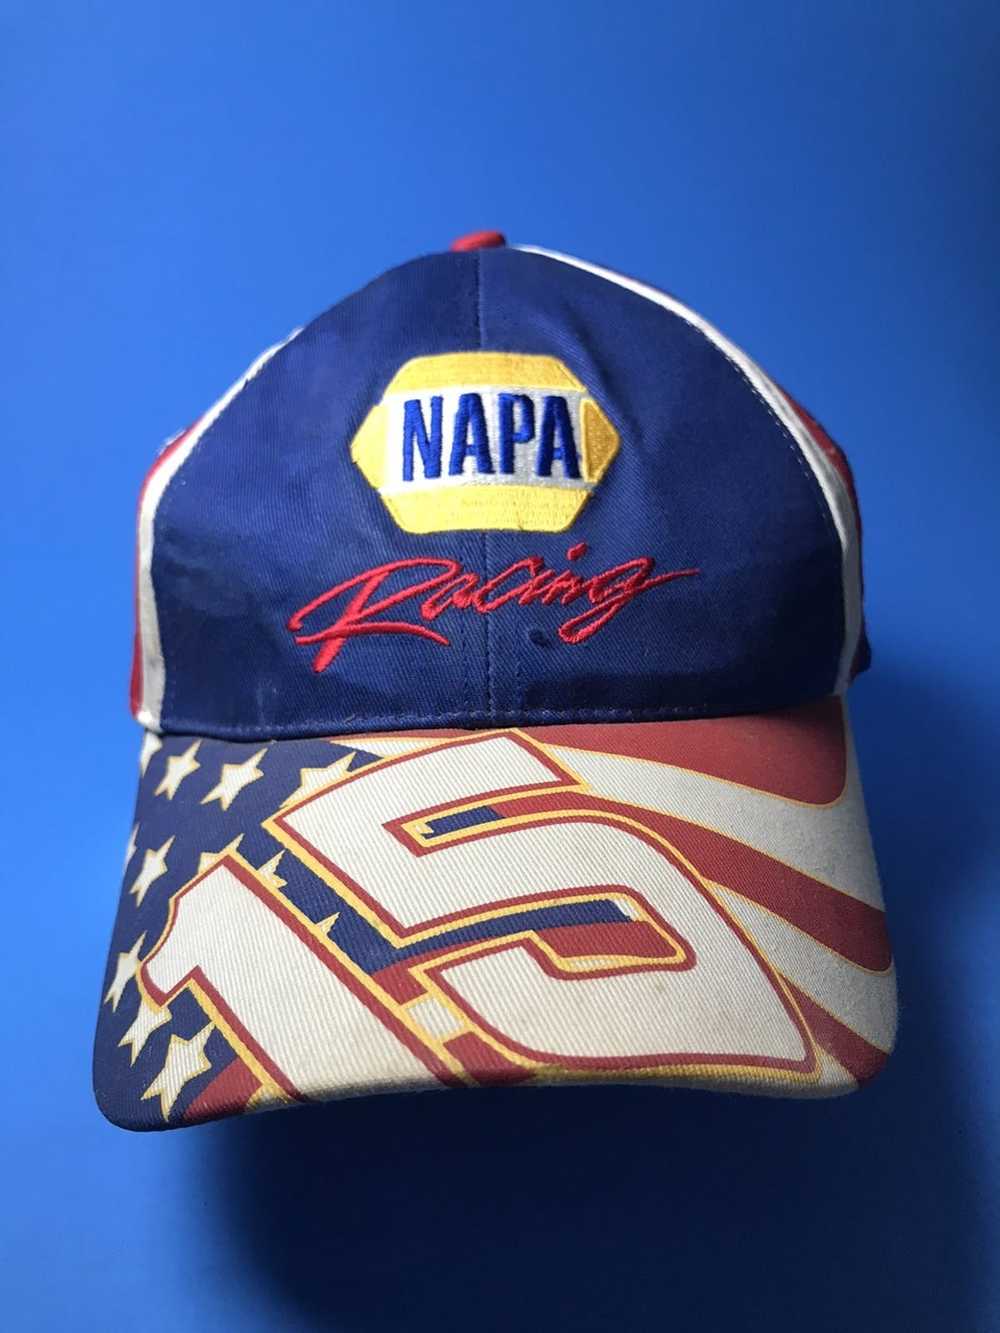 Vintage Vintage Napa Racing 15 Hat - image 1